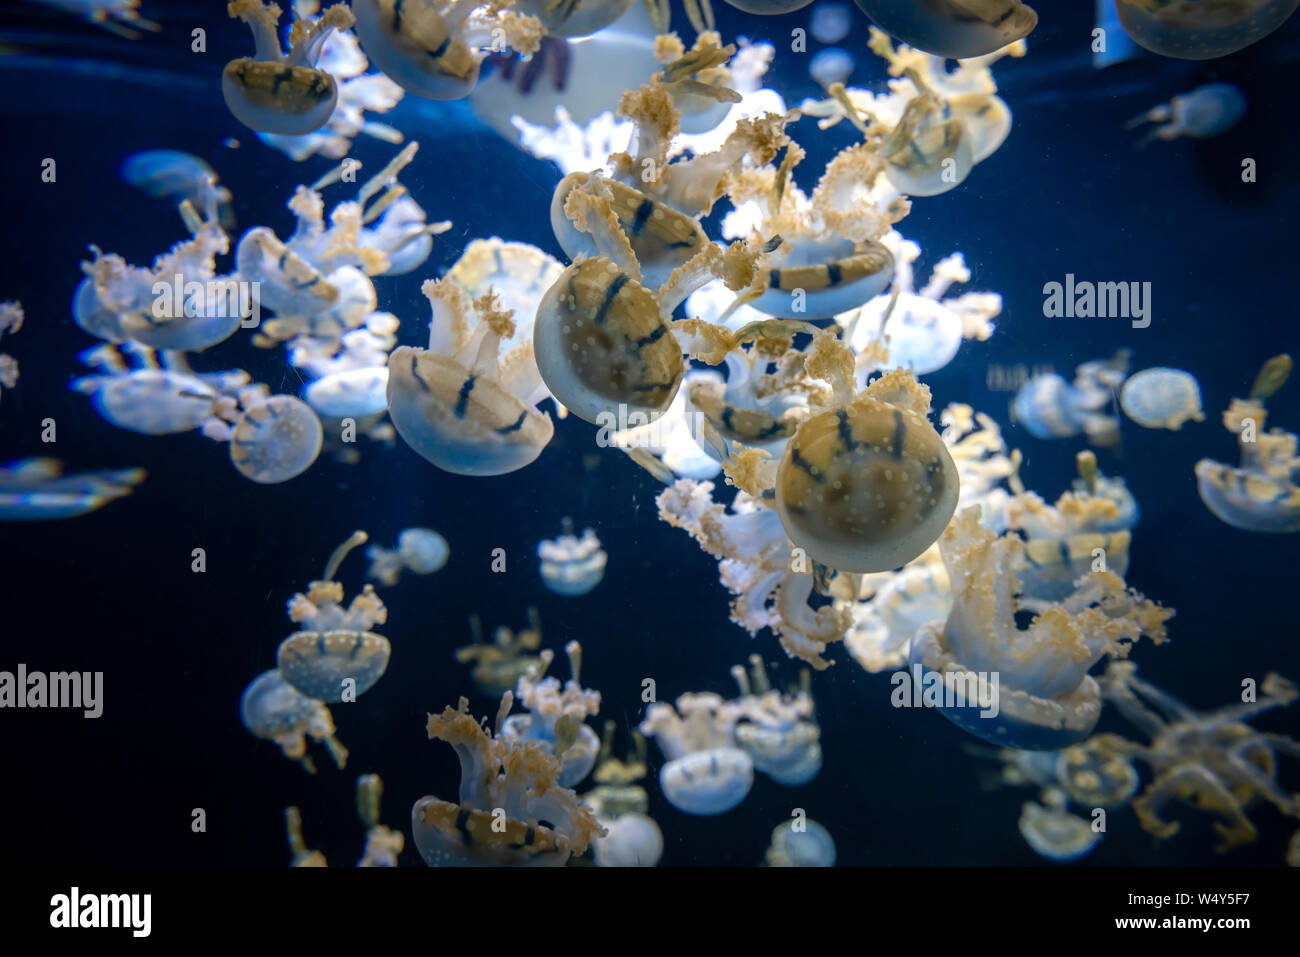 Belle méduse, méduse dans le neon light avec les poissons. Avec l'Aquarium de méduses bleues et beaucoup de poissons. Faire un aquarium avec des fascines et ocea Banque D'Images